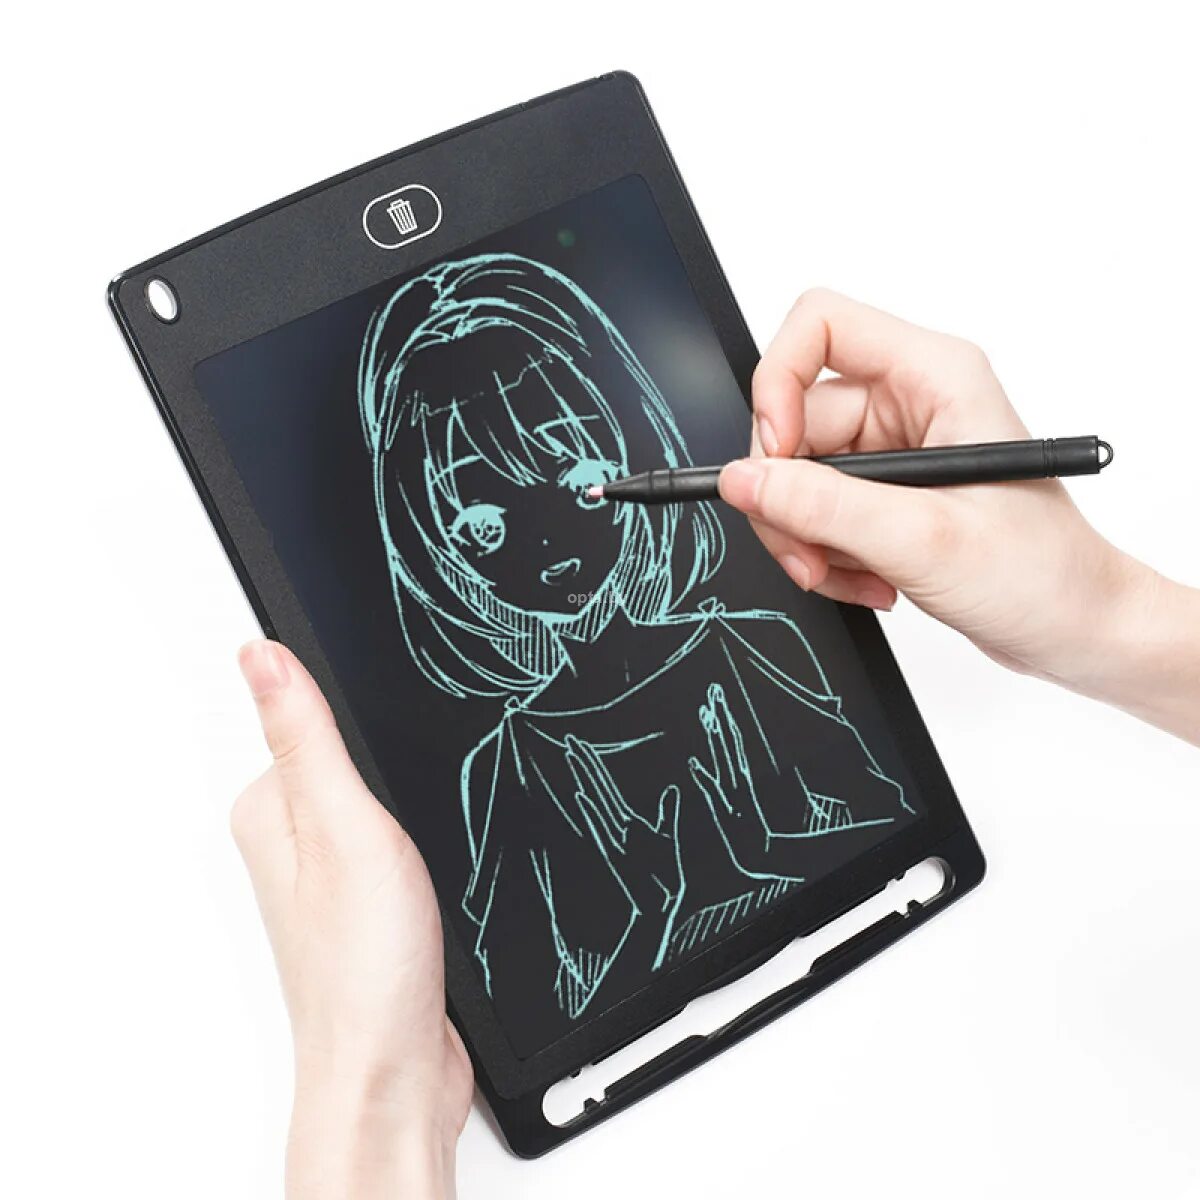 Планшет для рисования LCD writing Tablet 12 дюймов. Графический планшет 12 LCD writing Tablet. LCD планшет для рисования 8.5 дюймов. Графический планшет для заметок и рисования LCD writing Tablet 8'5. Планшет для рисования купить для компьютера